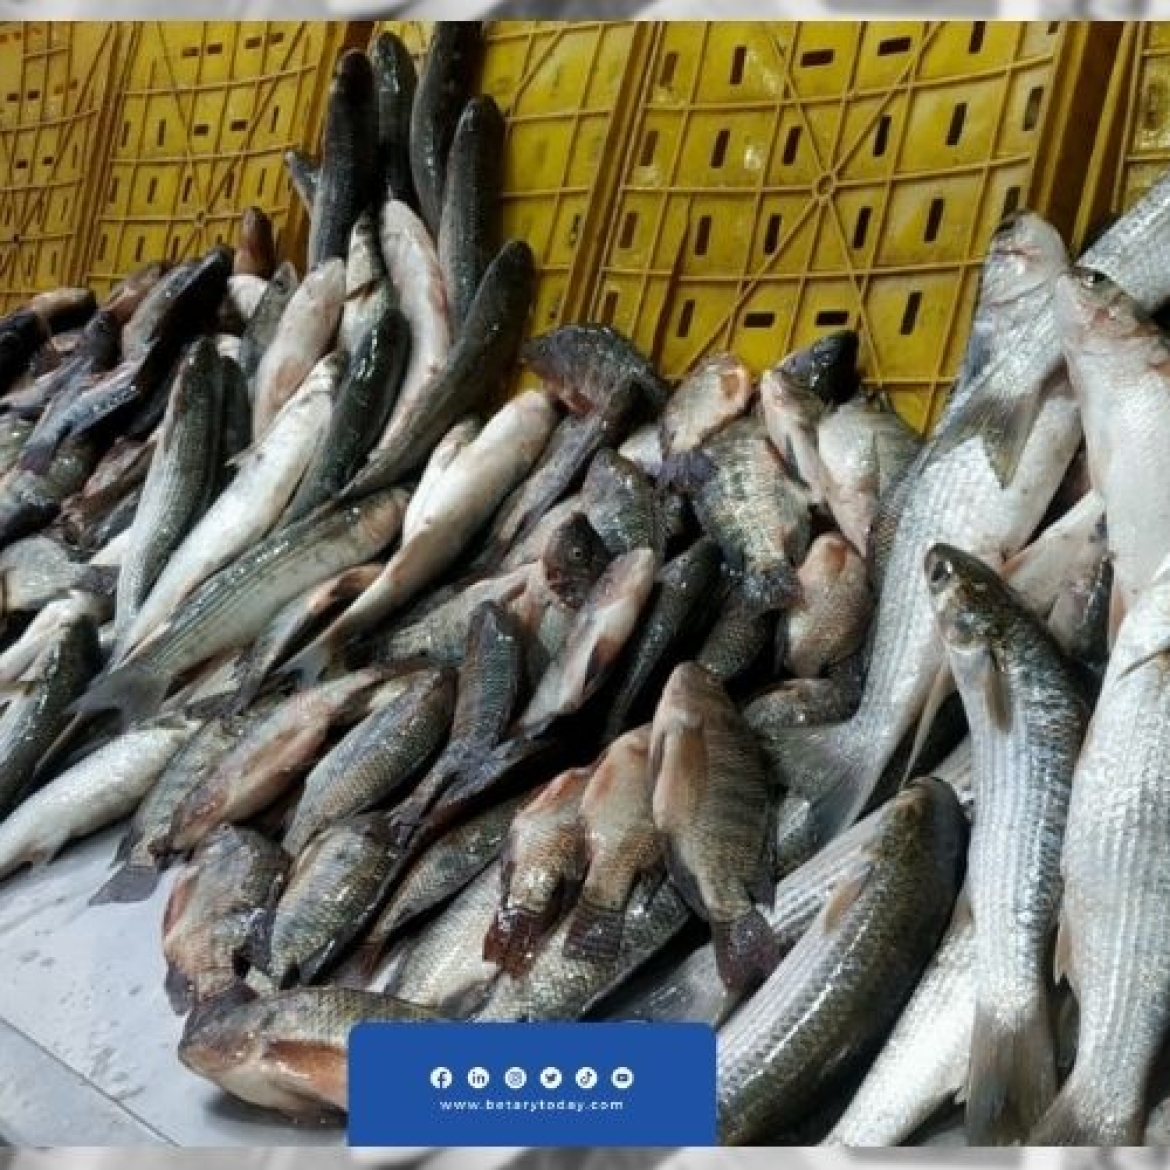 أسعار الأسماك مازالت تواصل الاستقرار اليوم الثلاثاء في سوق العبور